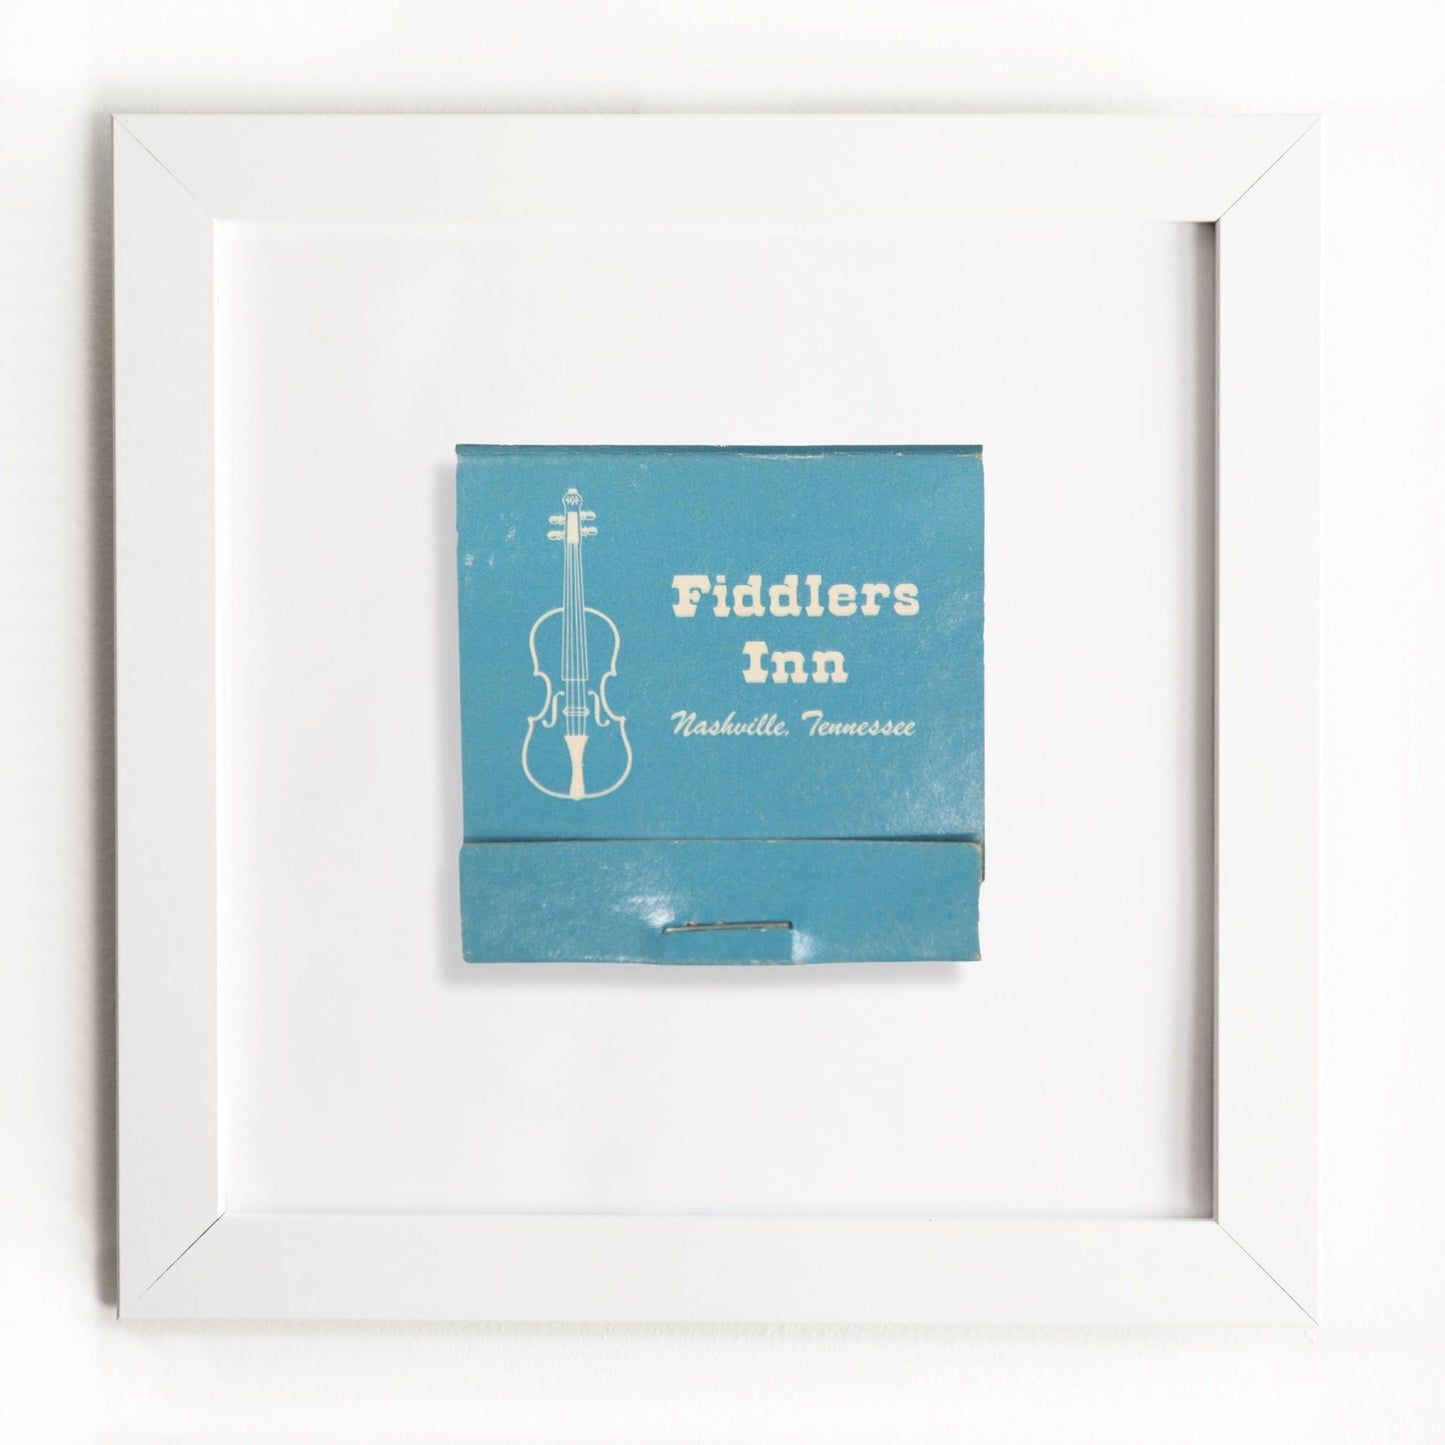 Fiddlers Inn